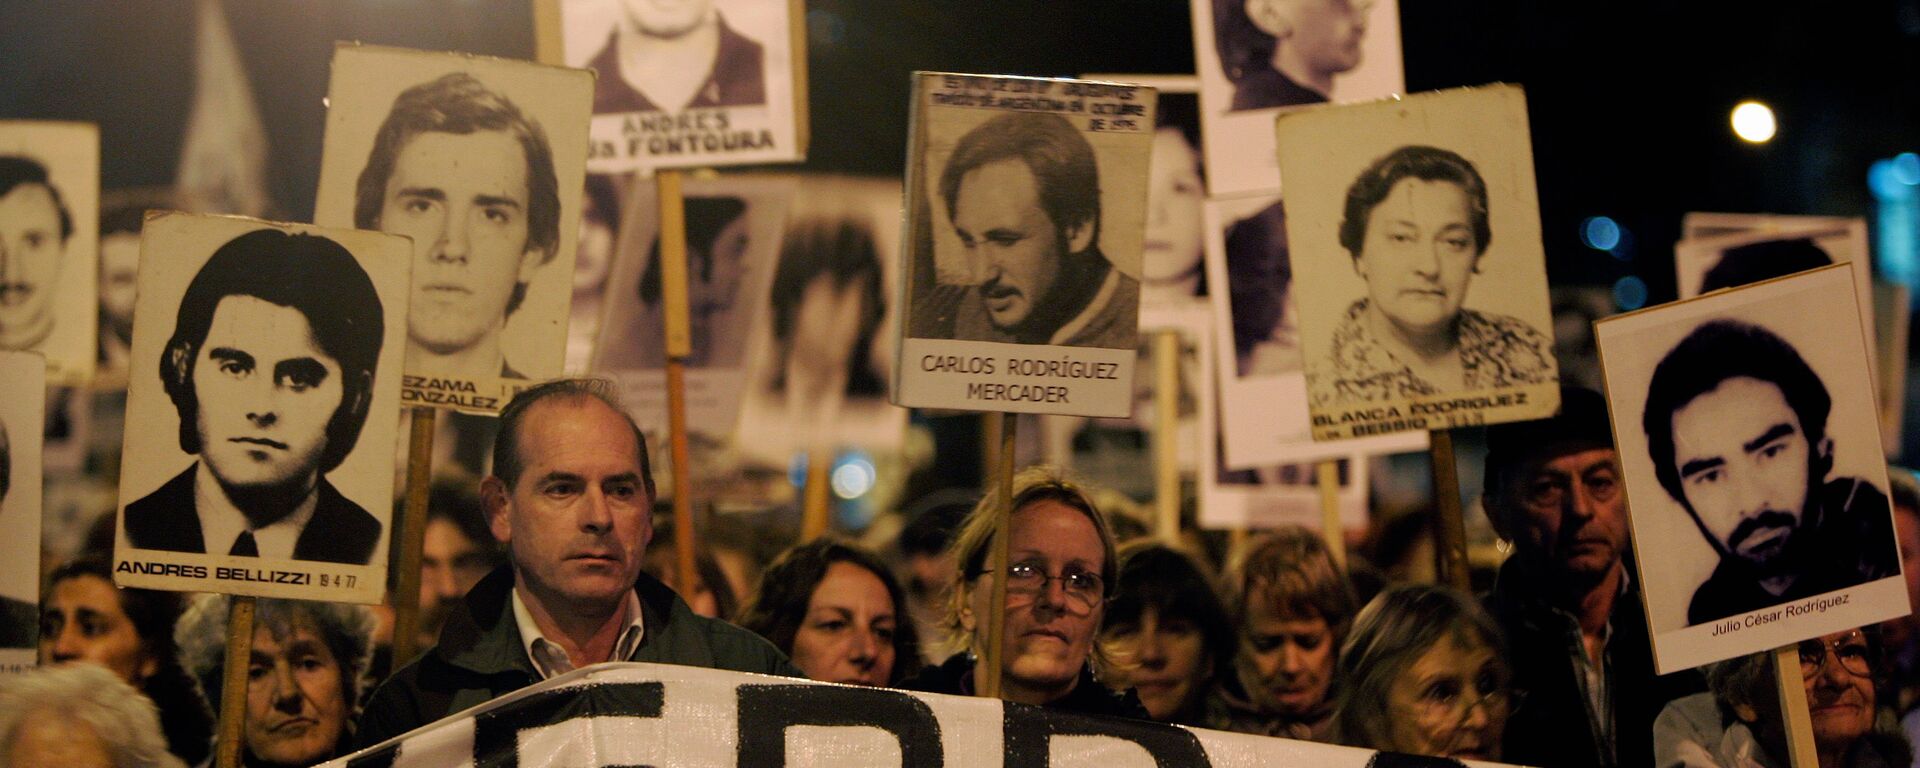 Marcha de Silencio en conmemoración de las víctimas de la dictadura de 1973-1985, 20 de mayo de 2088, Montevideo, Uruguay - Sputnik Mundo, 1920, 31.08.2020